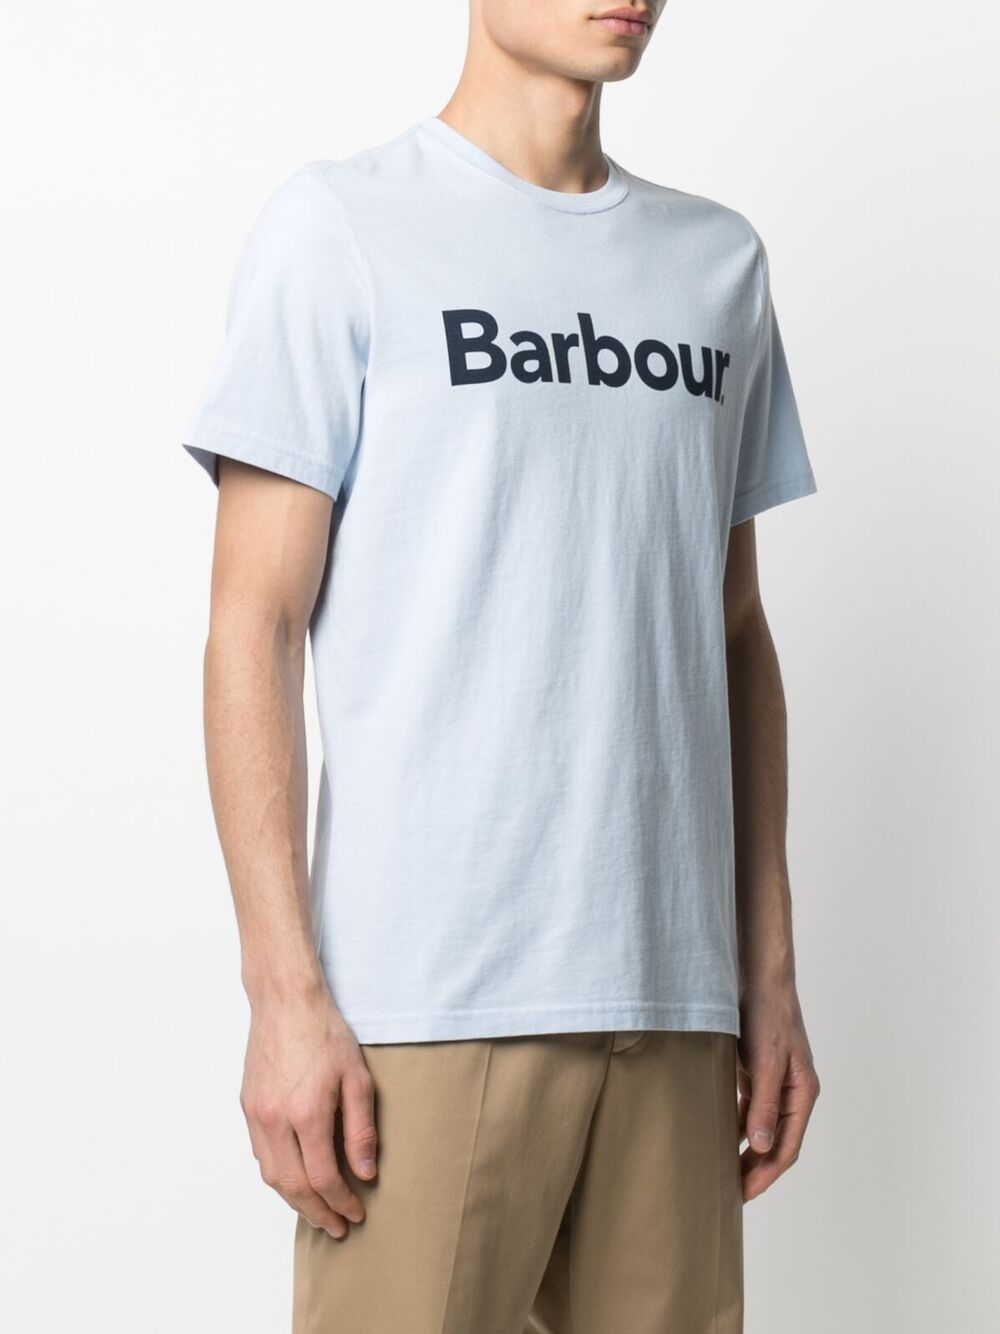 фото Barbour футболка с логотипом